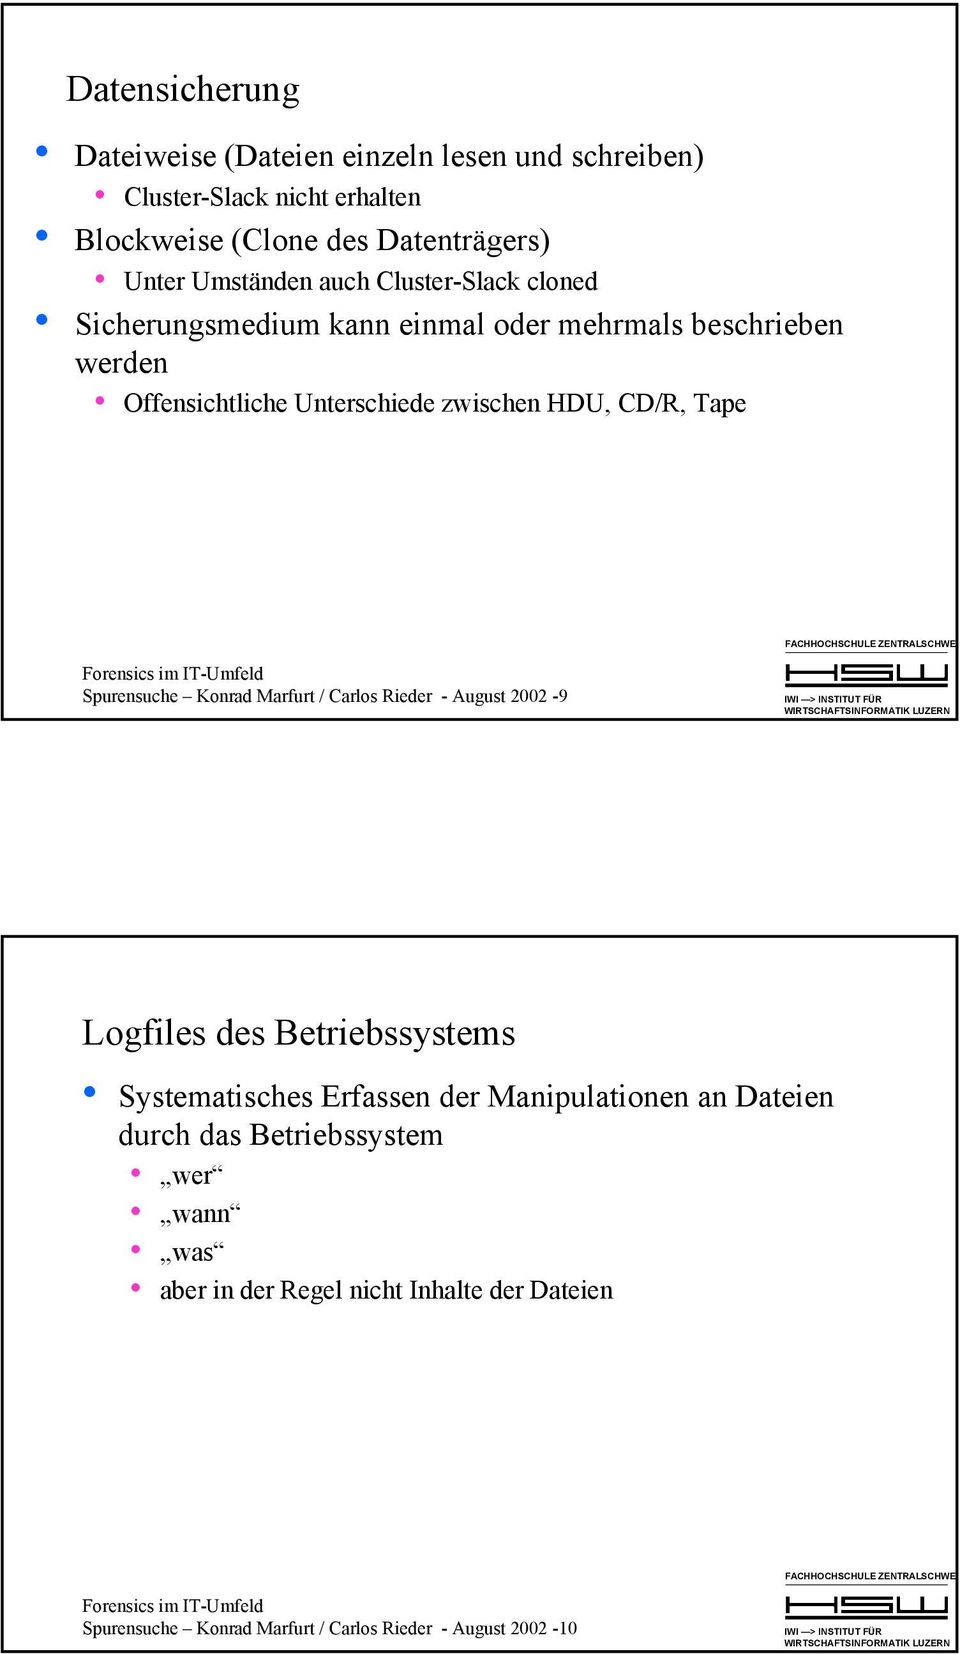 CD/R, Tape Spurensuche Konrad Marfurt / Carlos Rieder - August 2002-9 Logfiles des Betriebssystems Systematisches Erfassen der Manipulationen